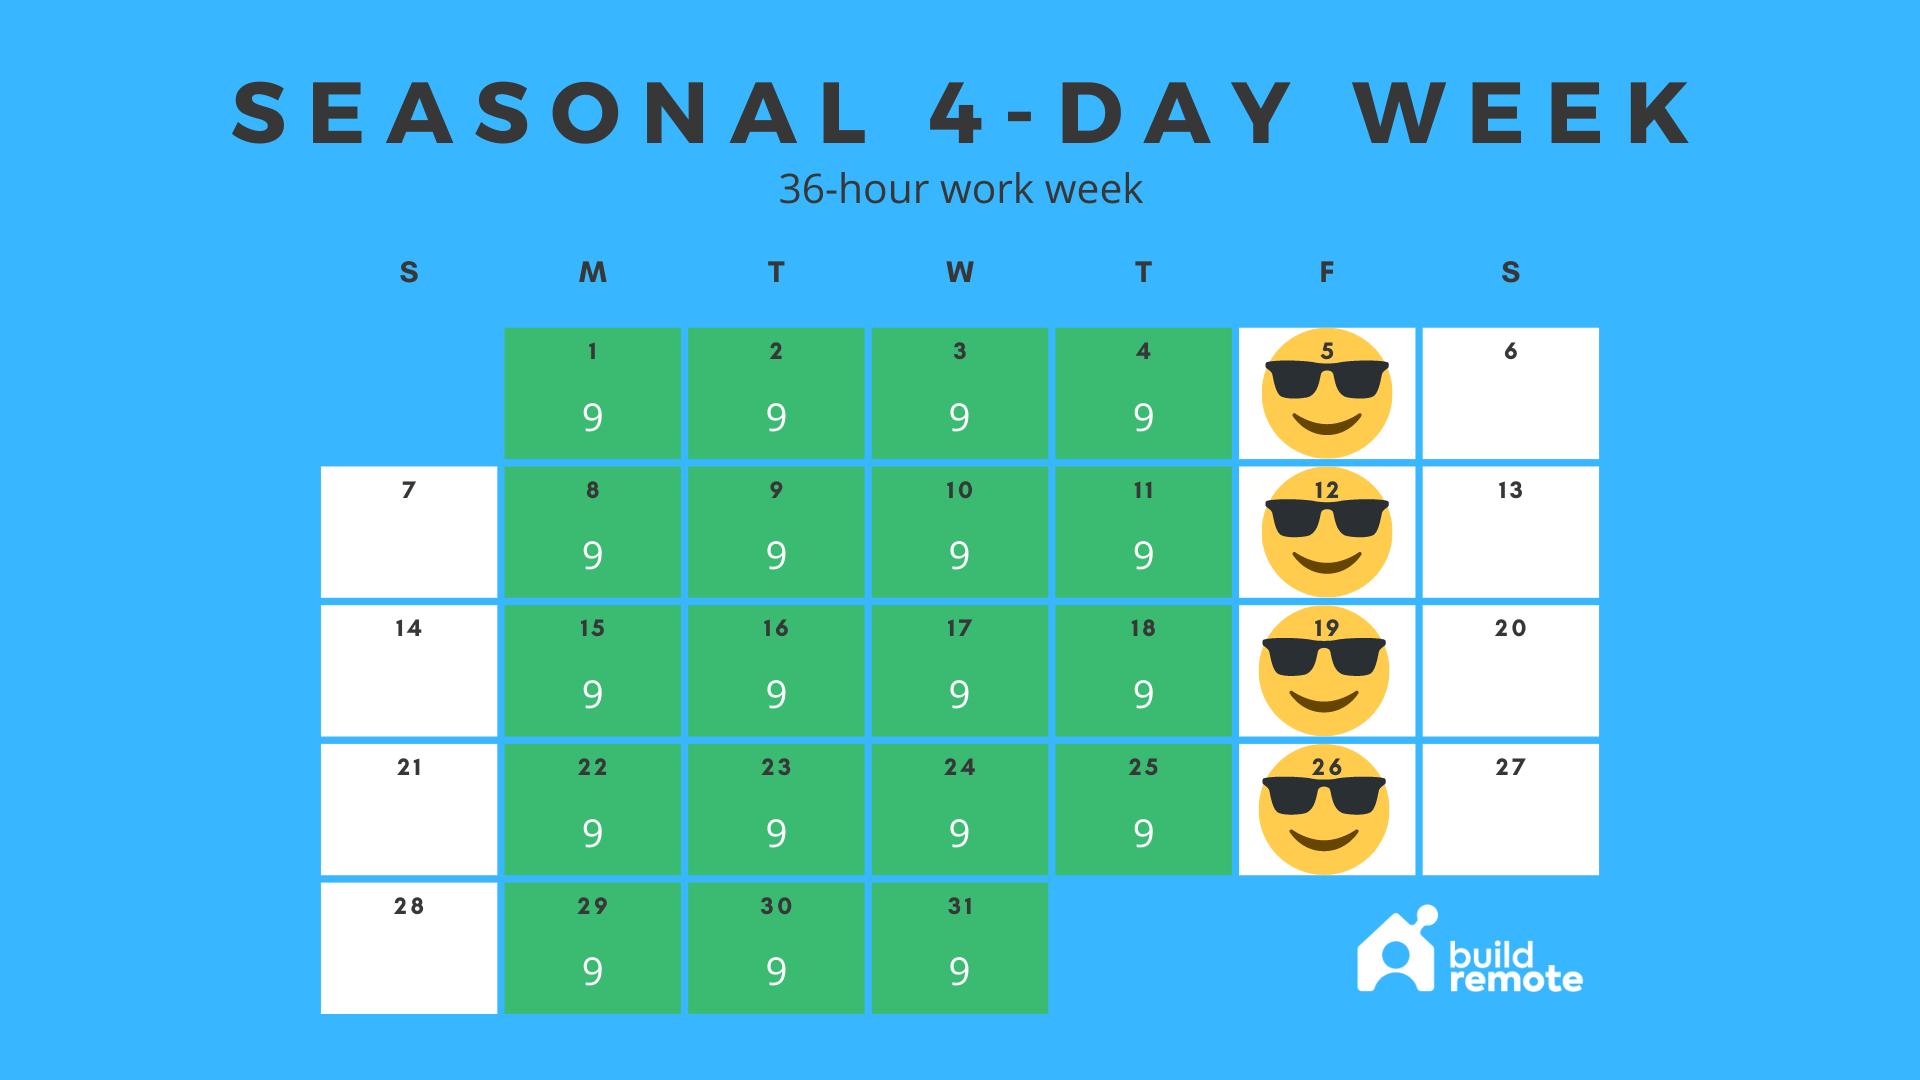 Seasonal 36-hour work week